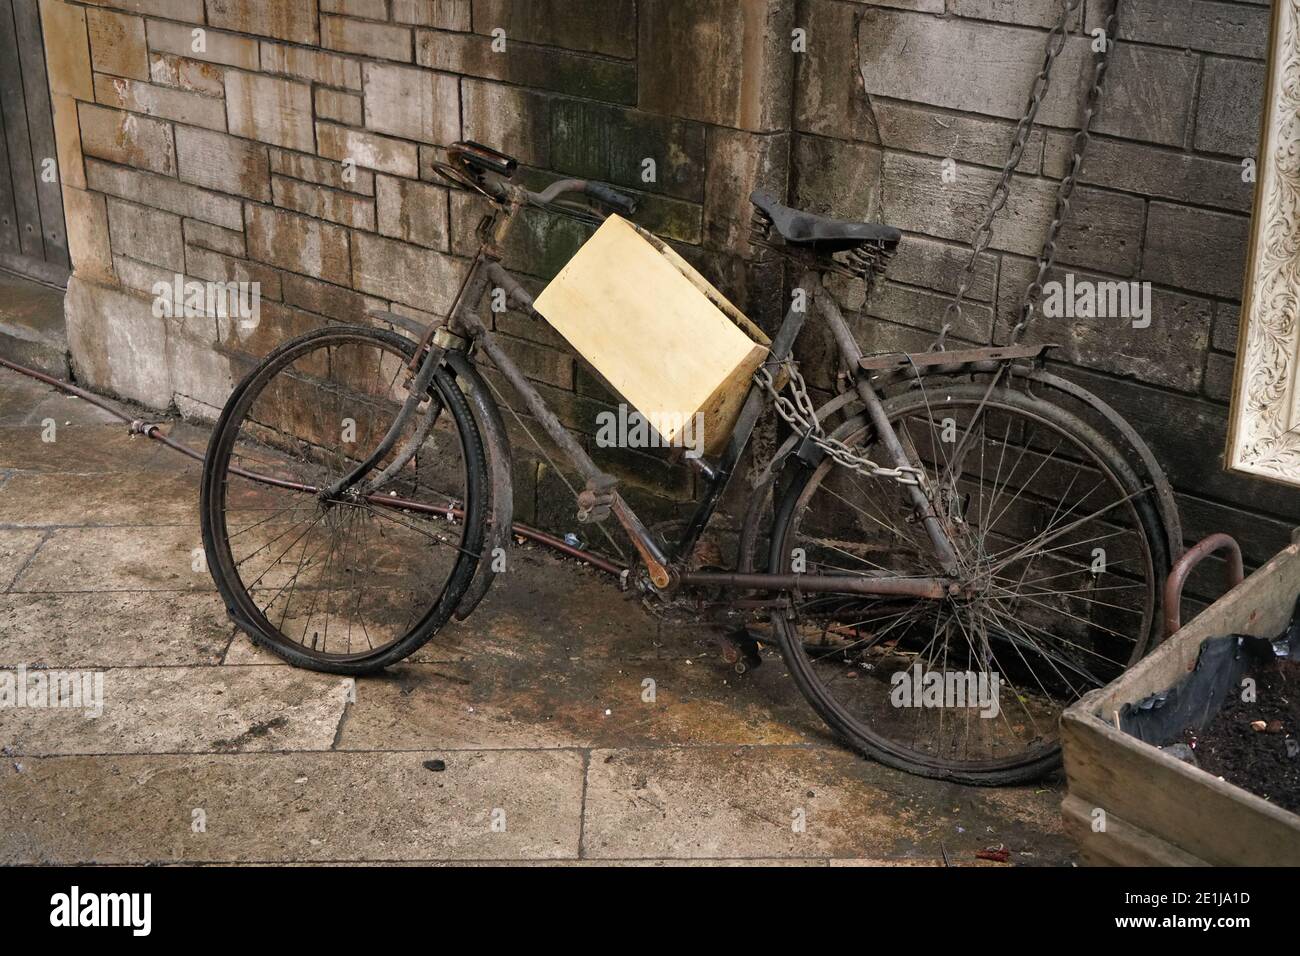 Ungenutztes rostig altes schwarzes Fahrrad mit Holzkiste in der Nähe geparkt Schmutzige Ziegelwand Stockfoto